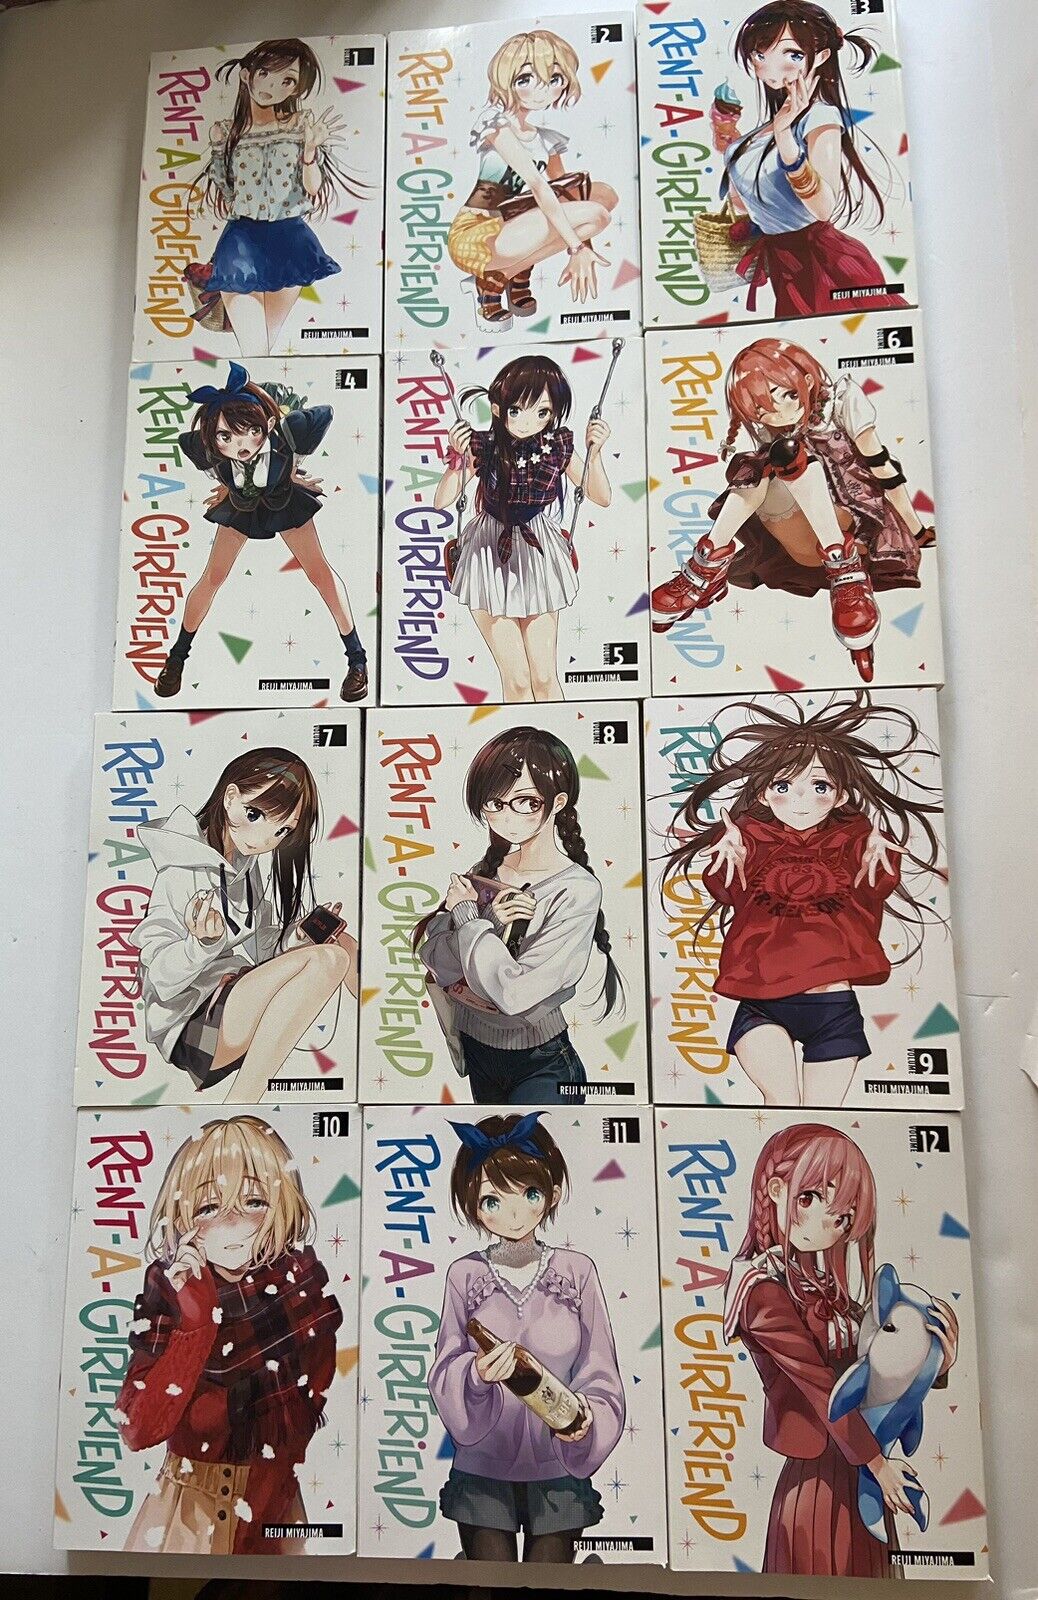 Rent A Girlfriend 1-12 English Manga By Reiji Miyajima*Excellent*